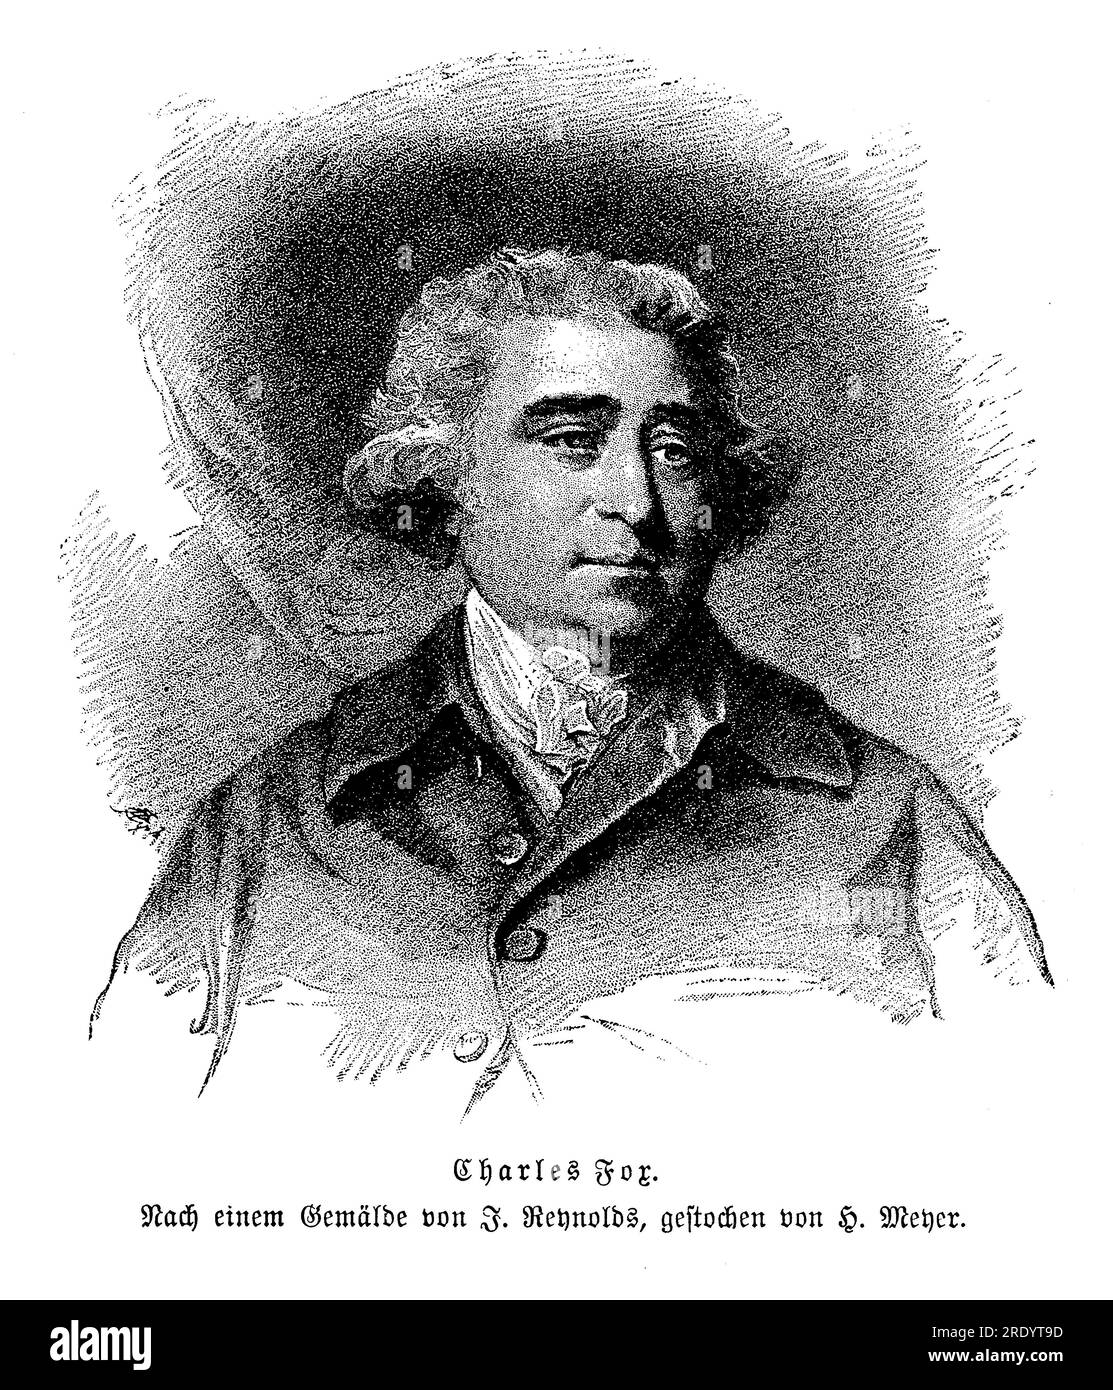 Portrait de Charles Fox (1749-1806) éminent homme d'État et homme politique britannique à la fin du 18e siècle et au début du 19e siècle. Il était connu pour son éloquence, son esprit et ses opinions politiques radicales. Fox était membre du parti Whig et a occupé divers postes gouvernementaux Banque D'Images